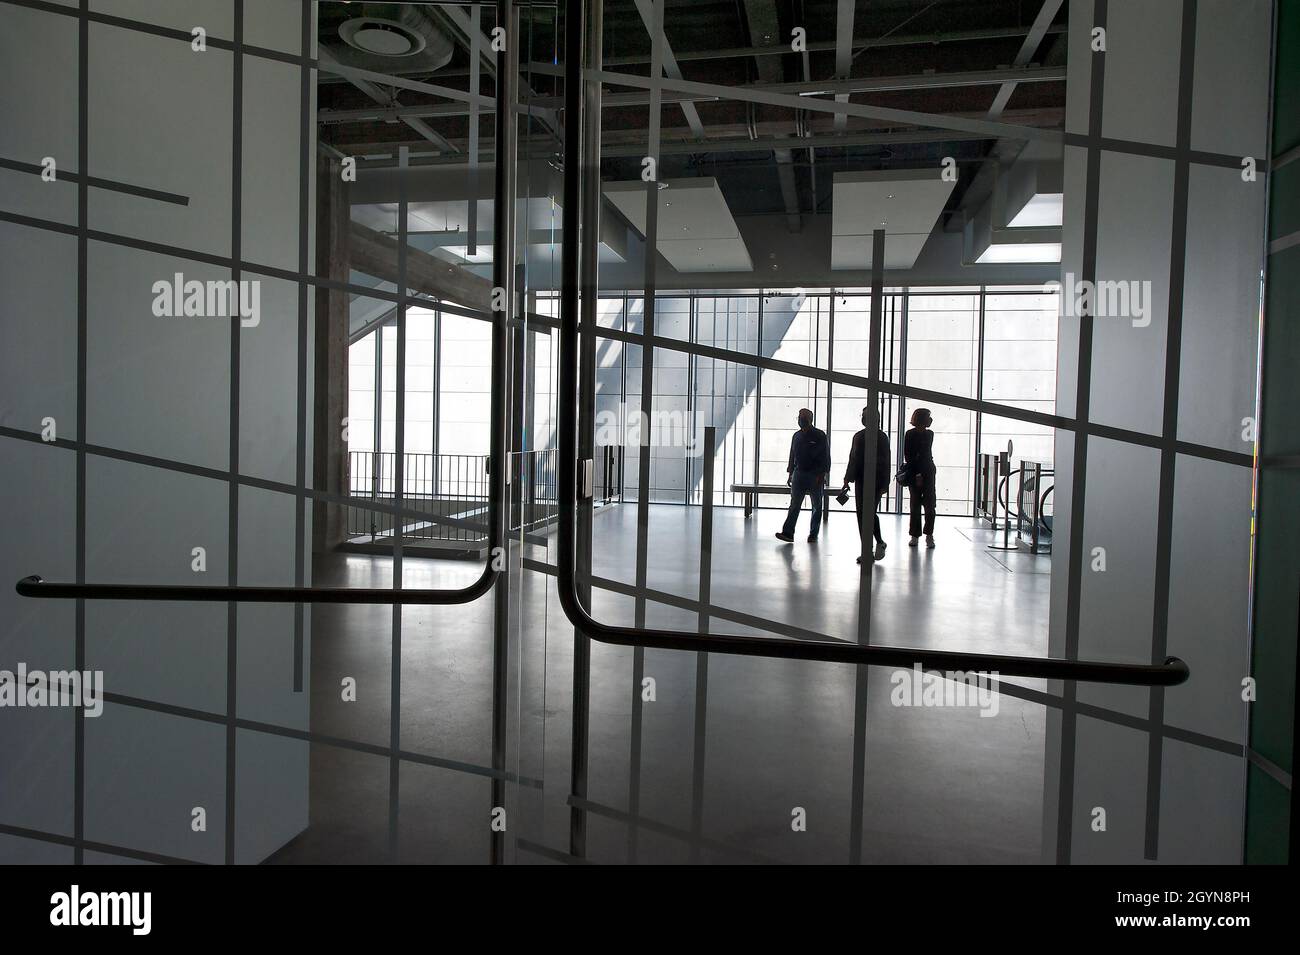 Innenarchitektur des Academy Museum of Motion Pictures durch eine Glastür zu einer Ausstellung des Architekten Renzo Piano gesehen. Stockfoto